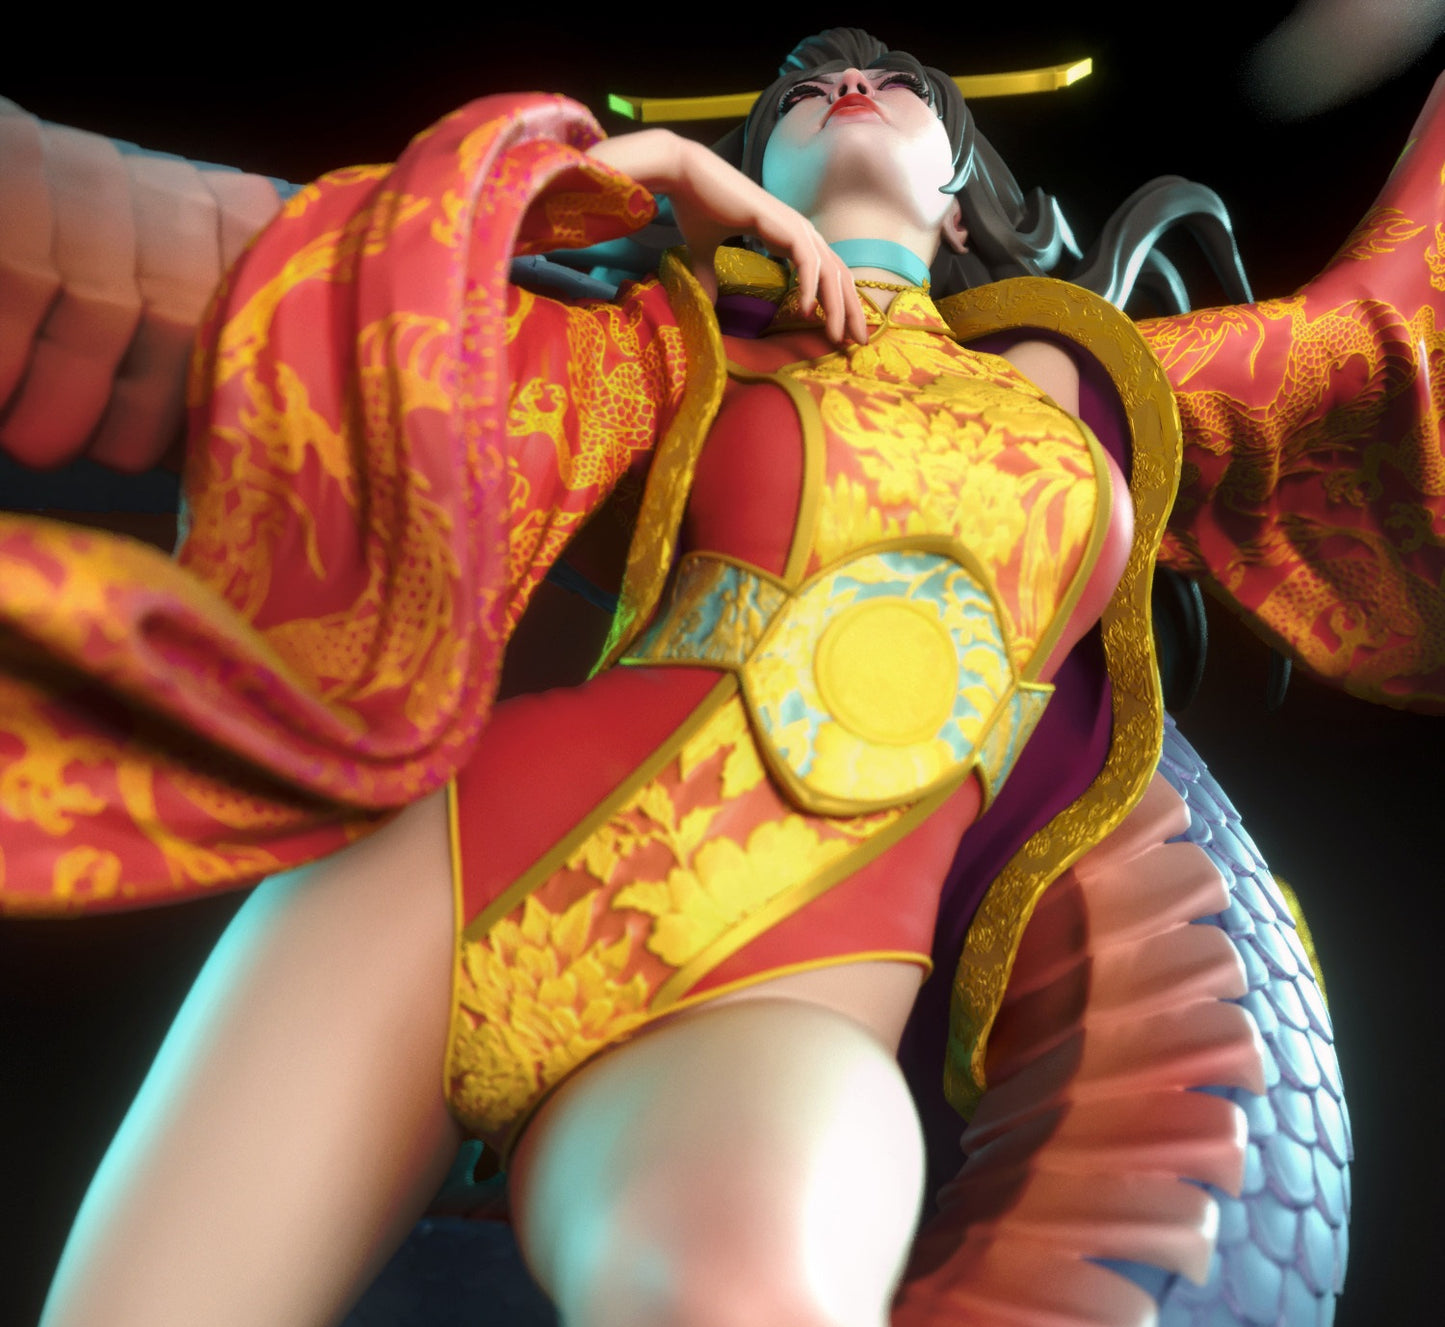 Fantasy Girl With Dragon STL Fichier Impression 3D Fichier STL numérique Personnage fantastique 0153